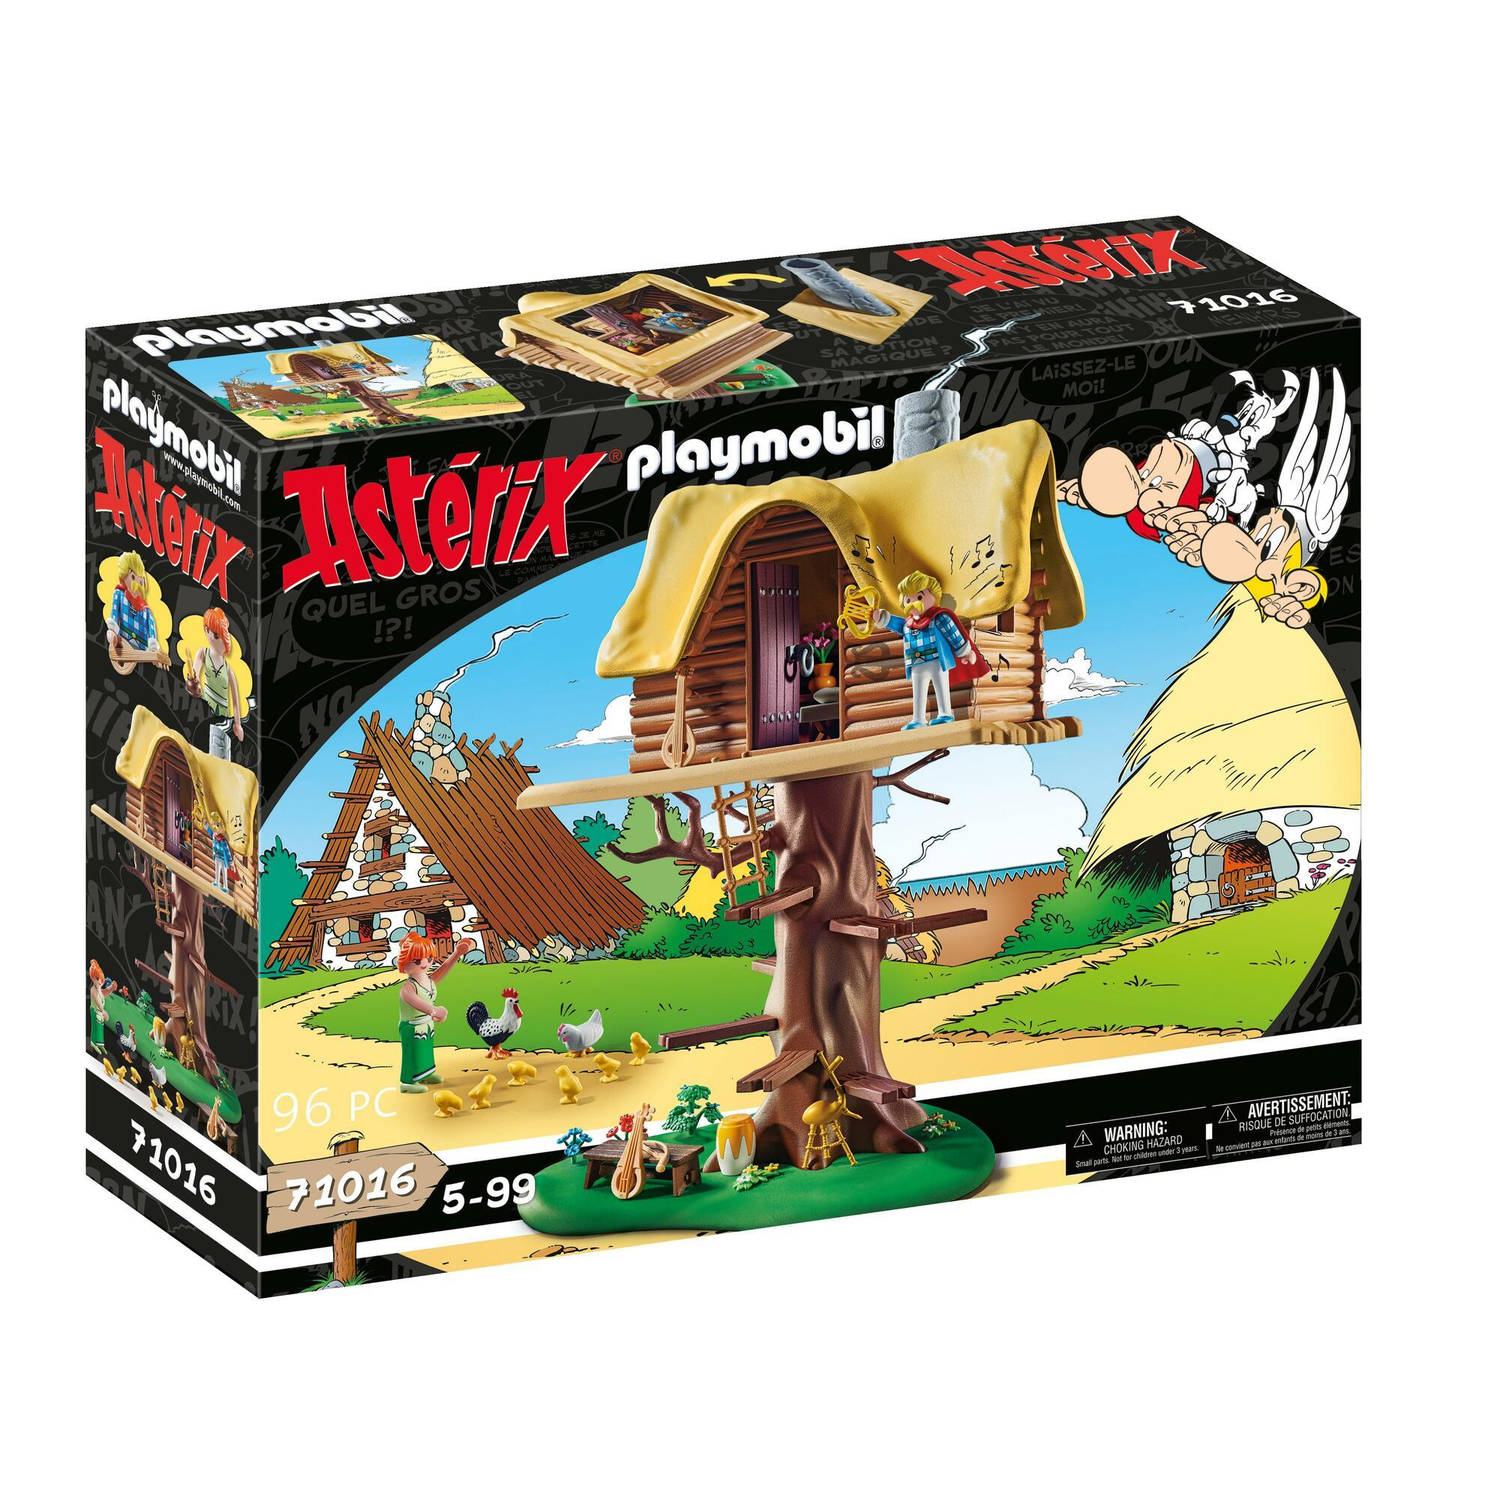 Playmobil 71016 Asterix kakofonix met boomhut